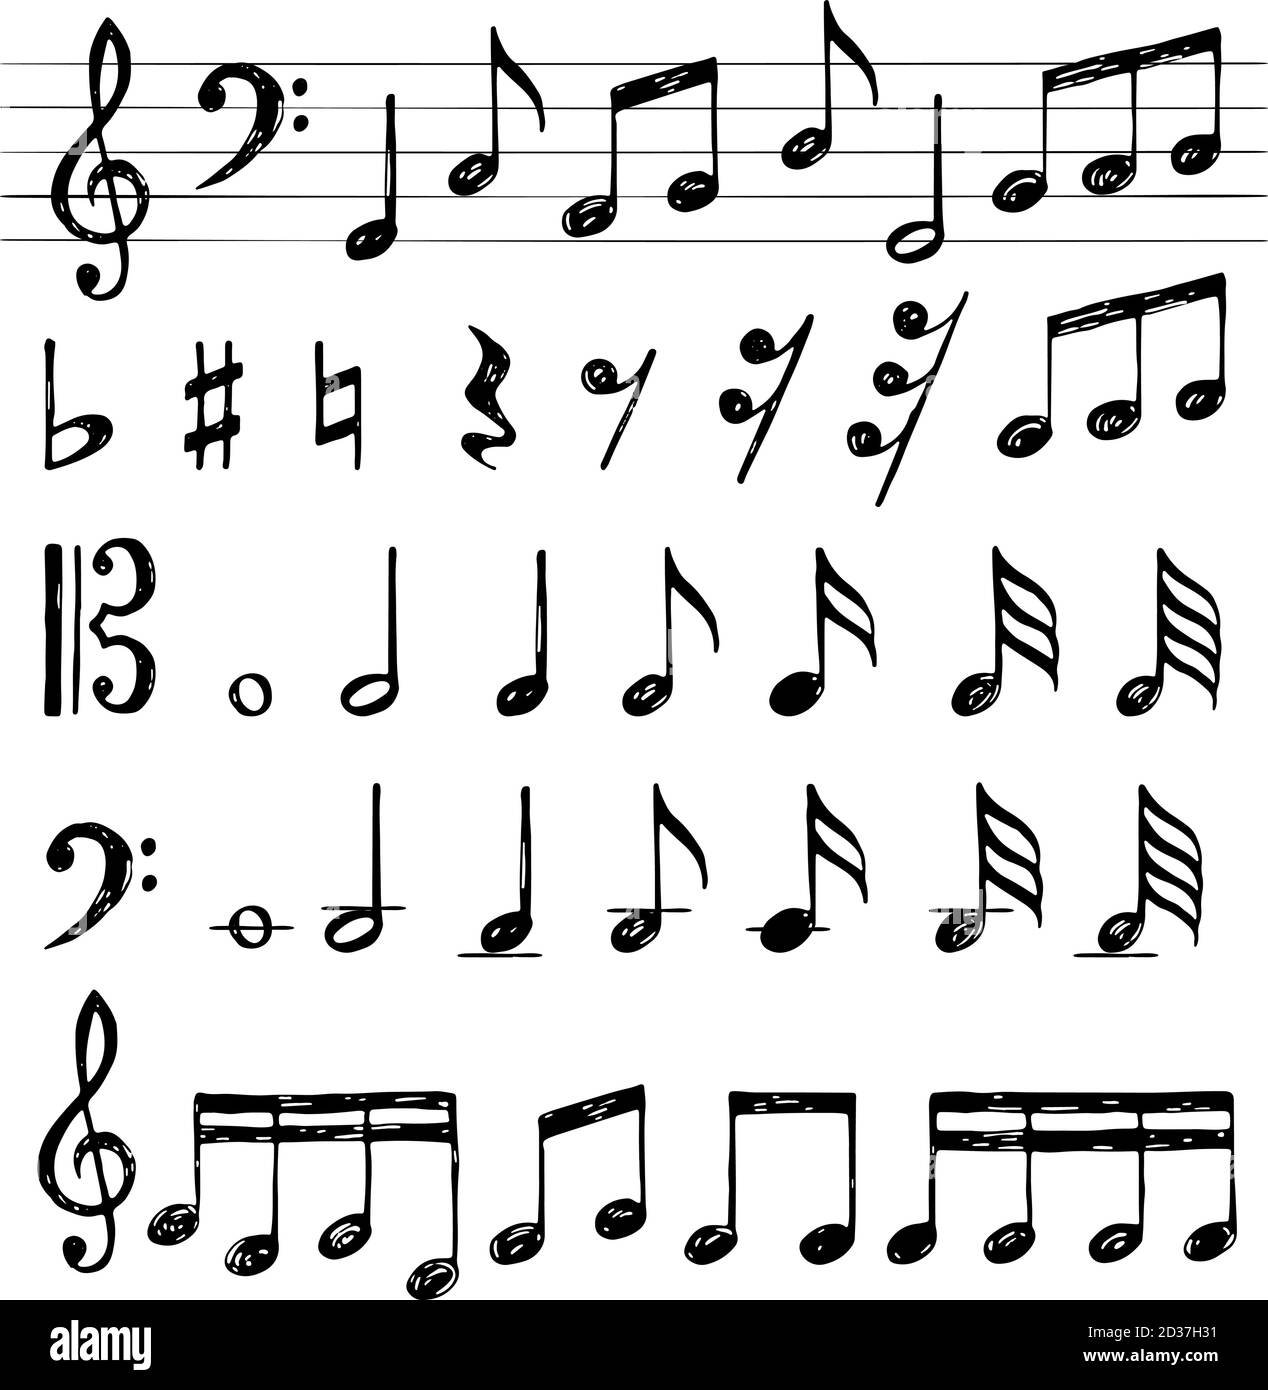 Musiknotenkollektion. Höhen-Schlüssel Ton schwarze Symbole Klavier Tasten stave f scharfe Vektorbilder Stock Vektor